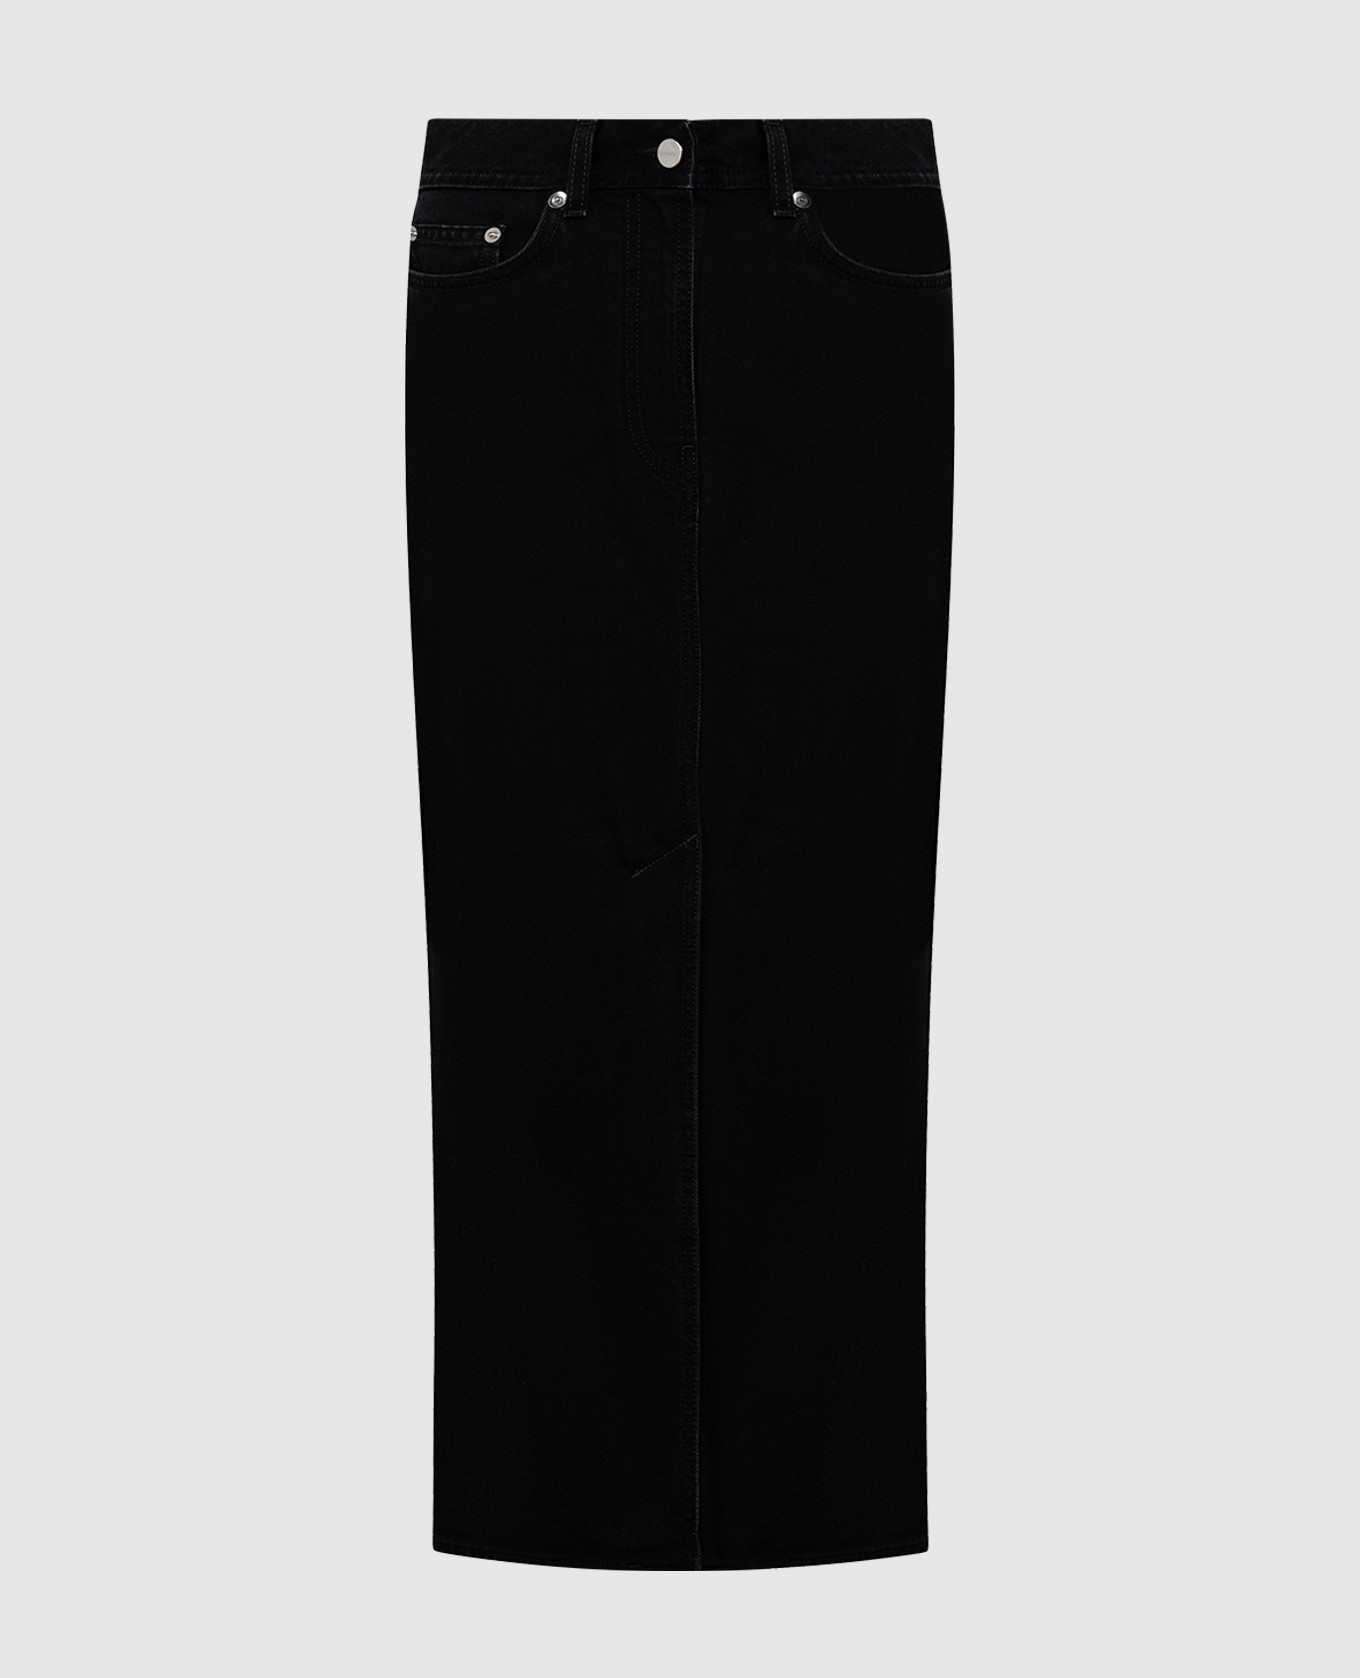 Черная джинсовая юбка миди Rona с логотипом патча